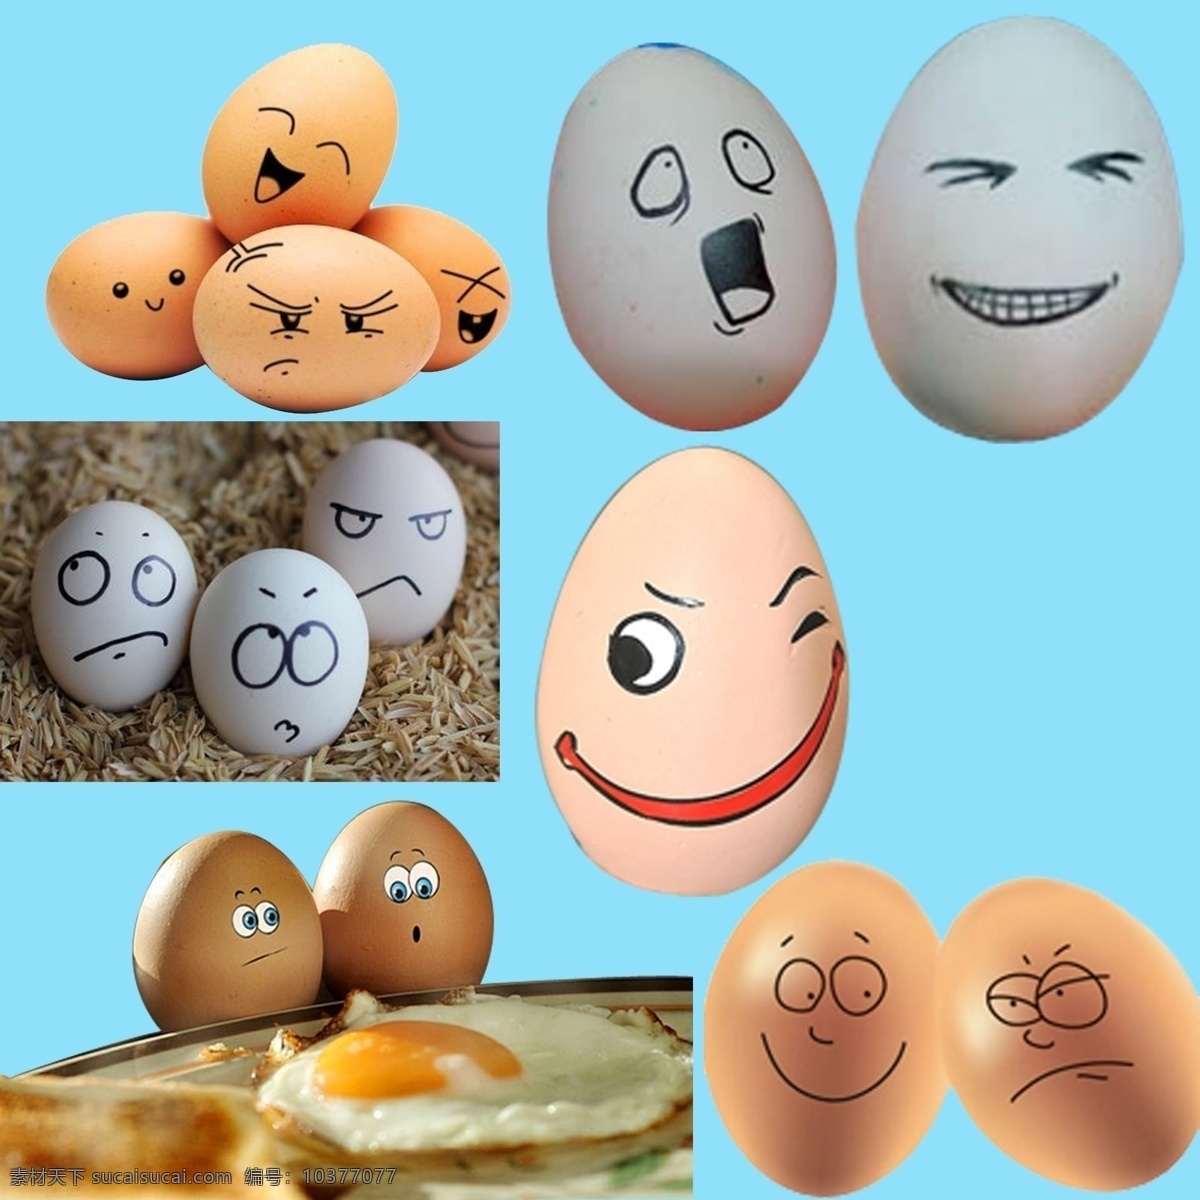 创意 鸡蛋 表情 鸡蛋素材 鸡蛋表情 搞怪表情 可爱的鸡蛋 蛋壳文化 有趣的鸡蛋 psd源文件